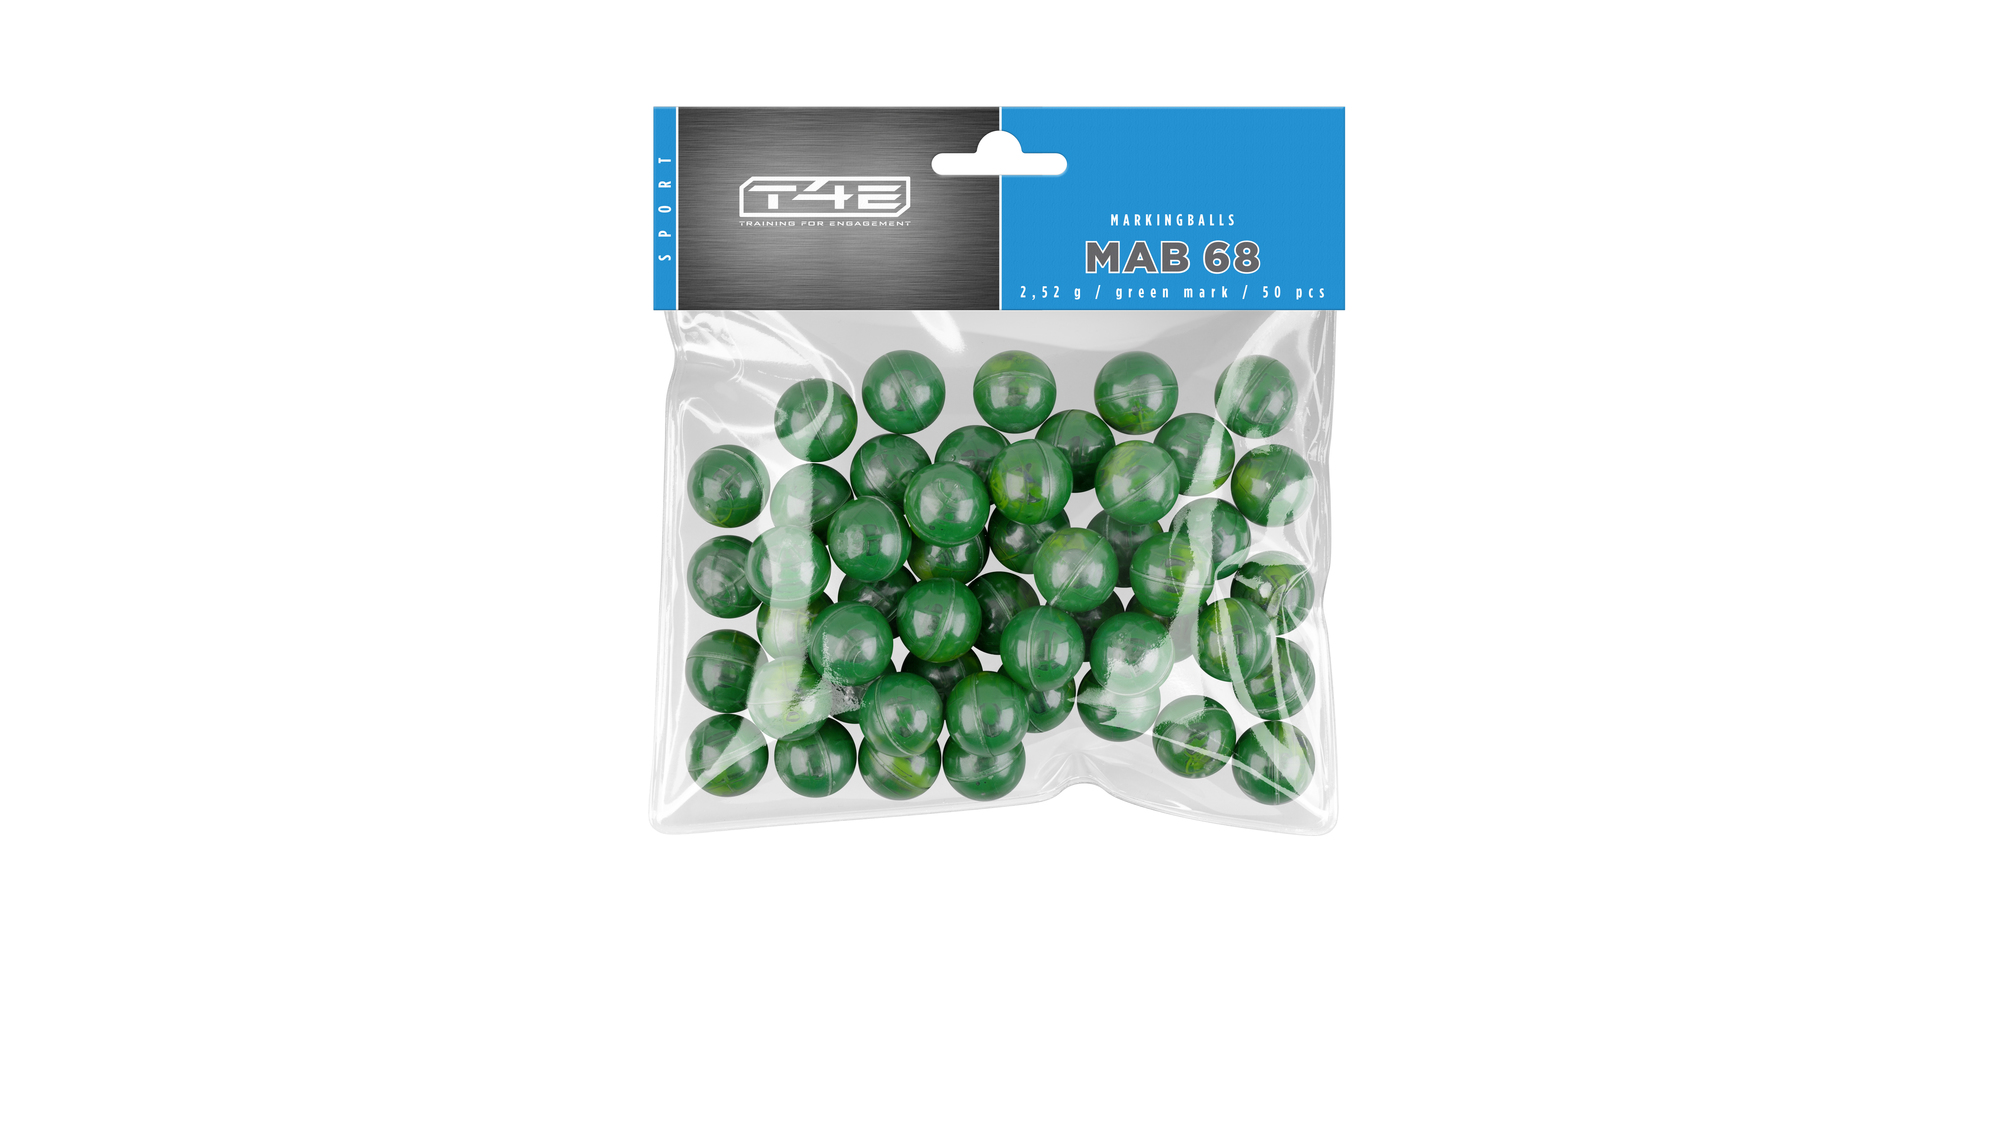 T4E Marking Balls .68 50er Packung, grün, 2,52 g